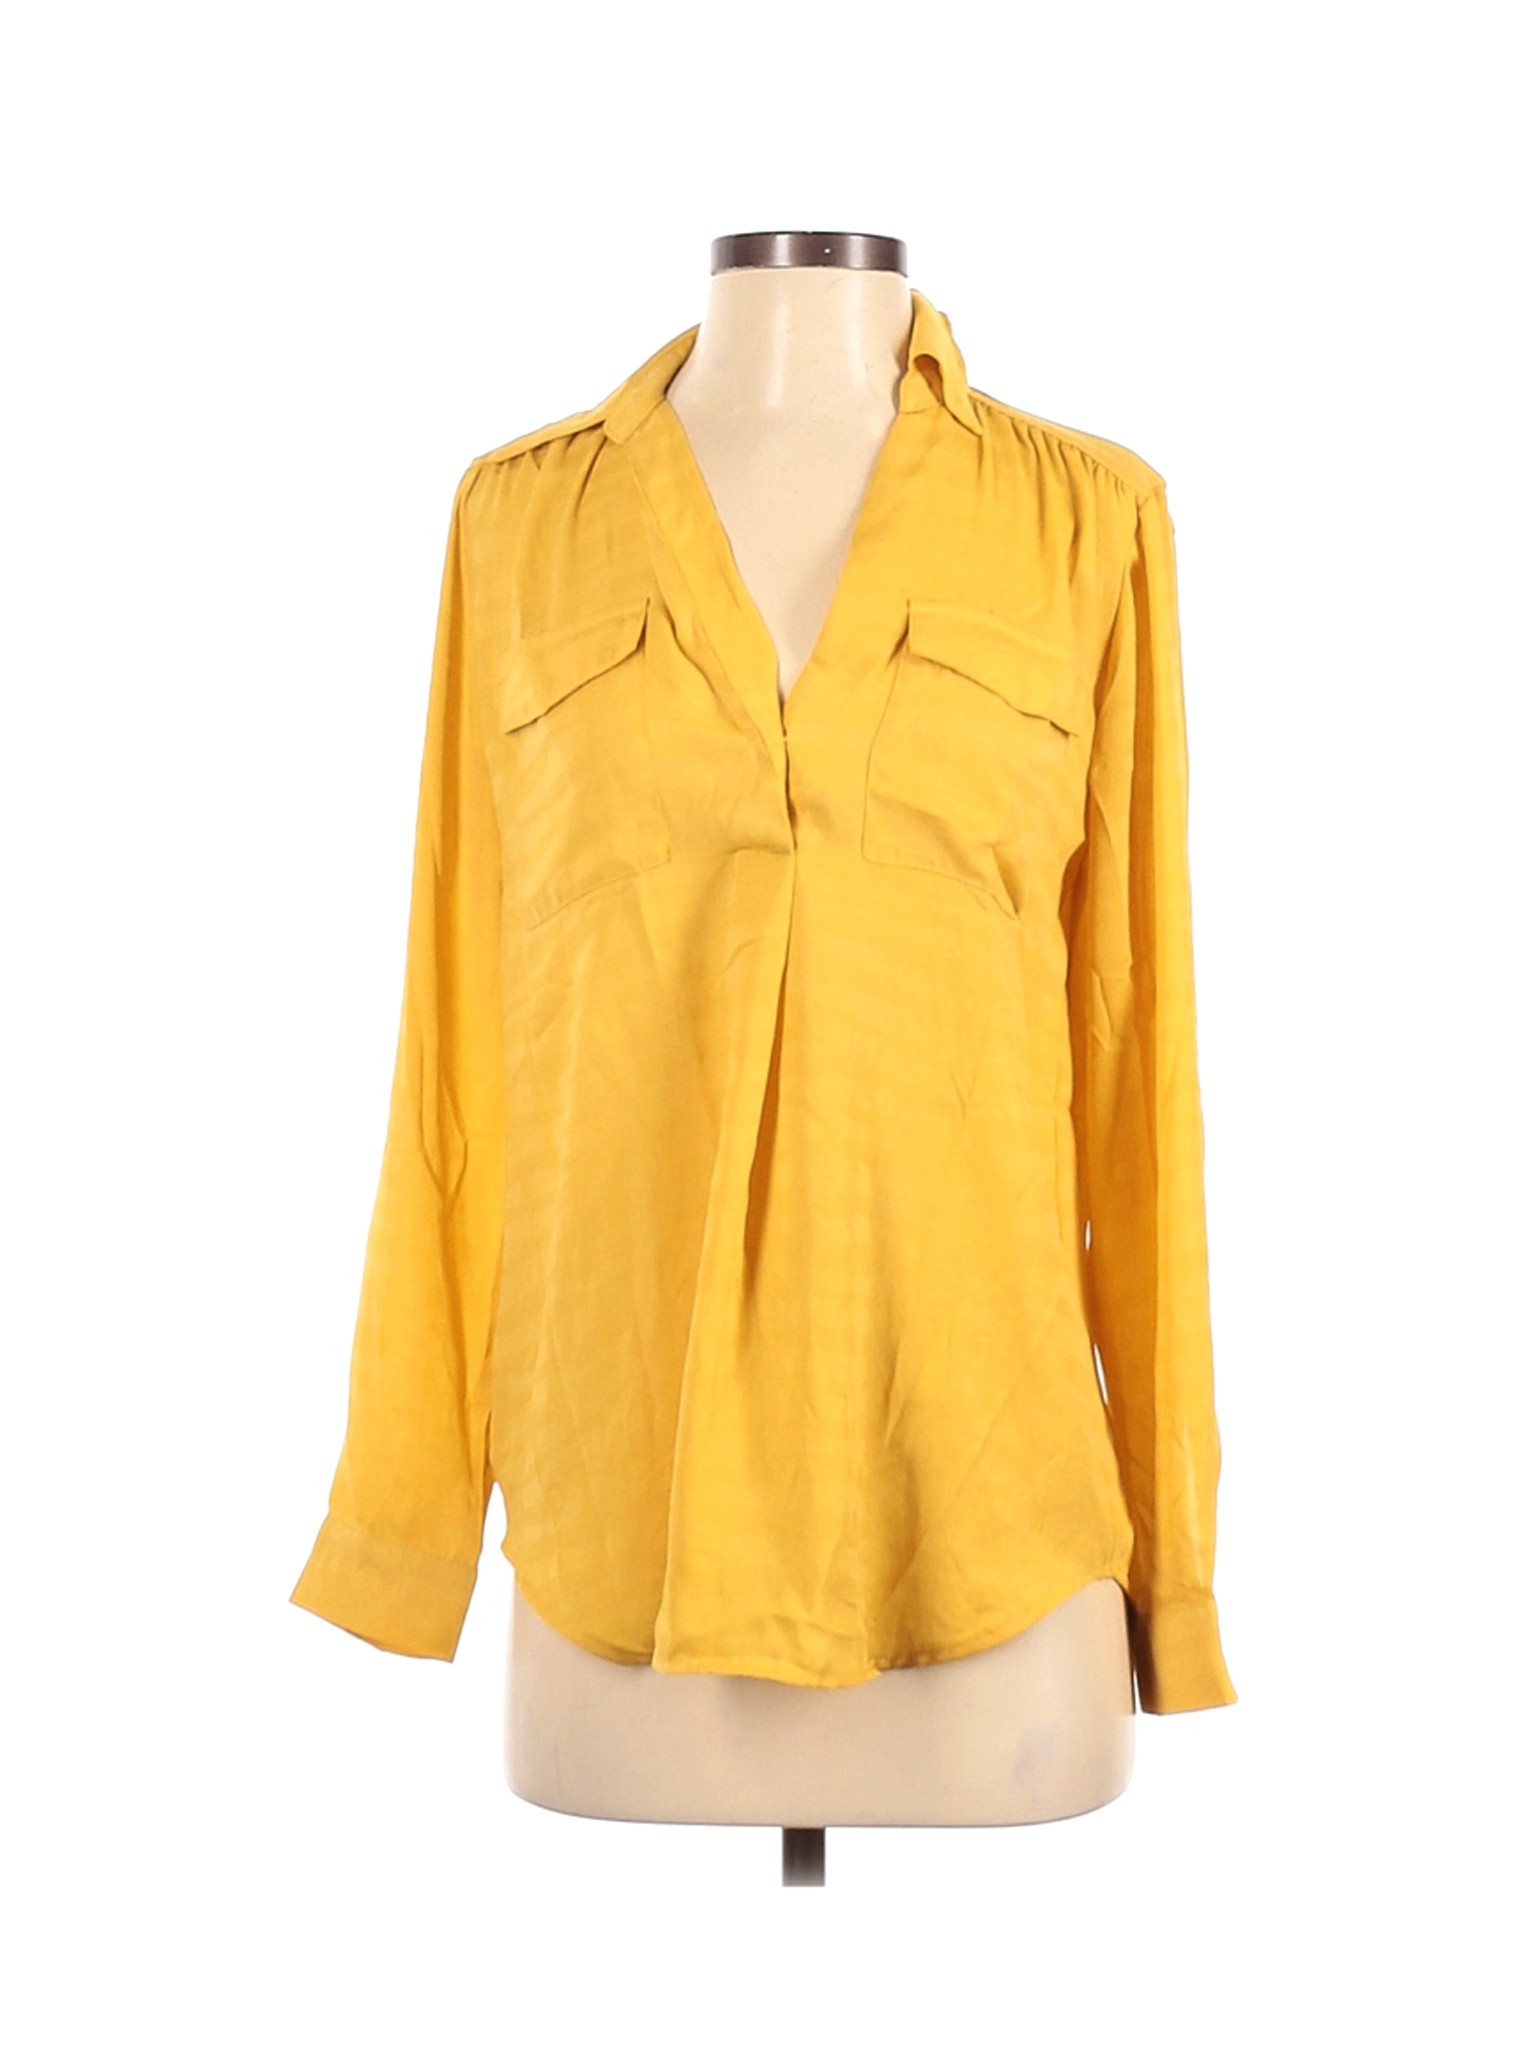 Ann Taylor Women Yellow Long Sleeve Blouse XS | eBay